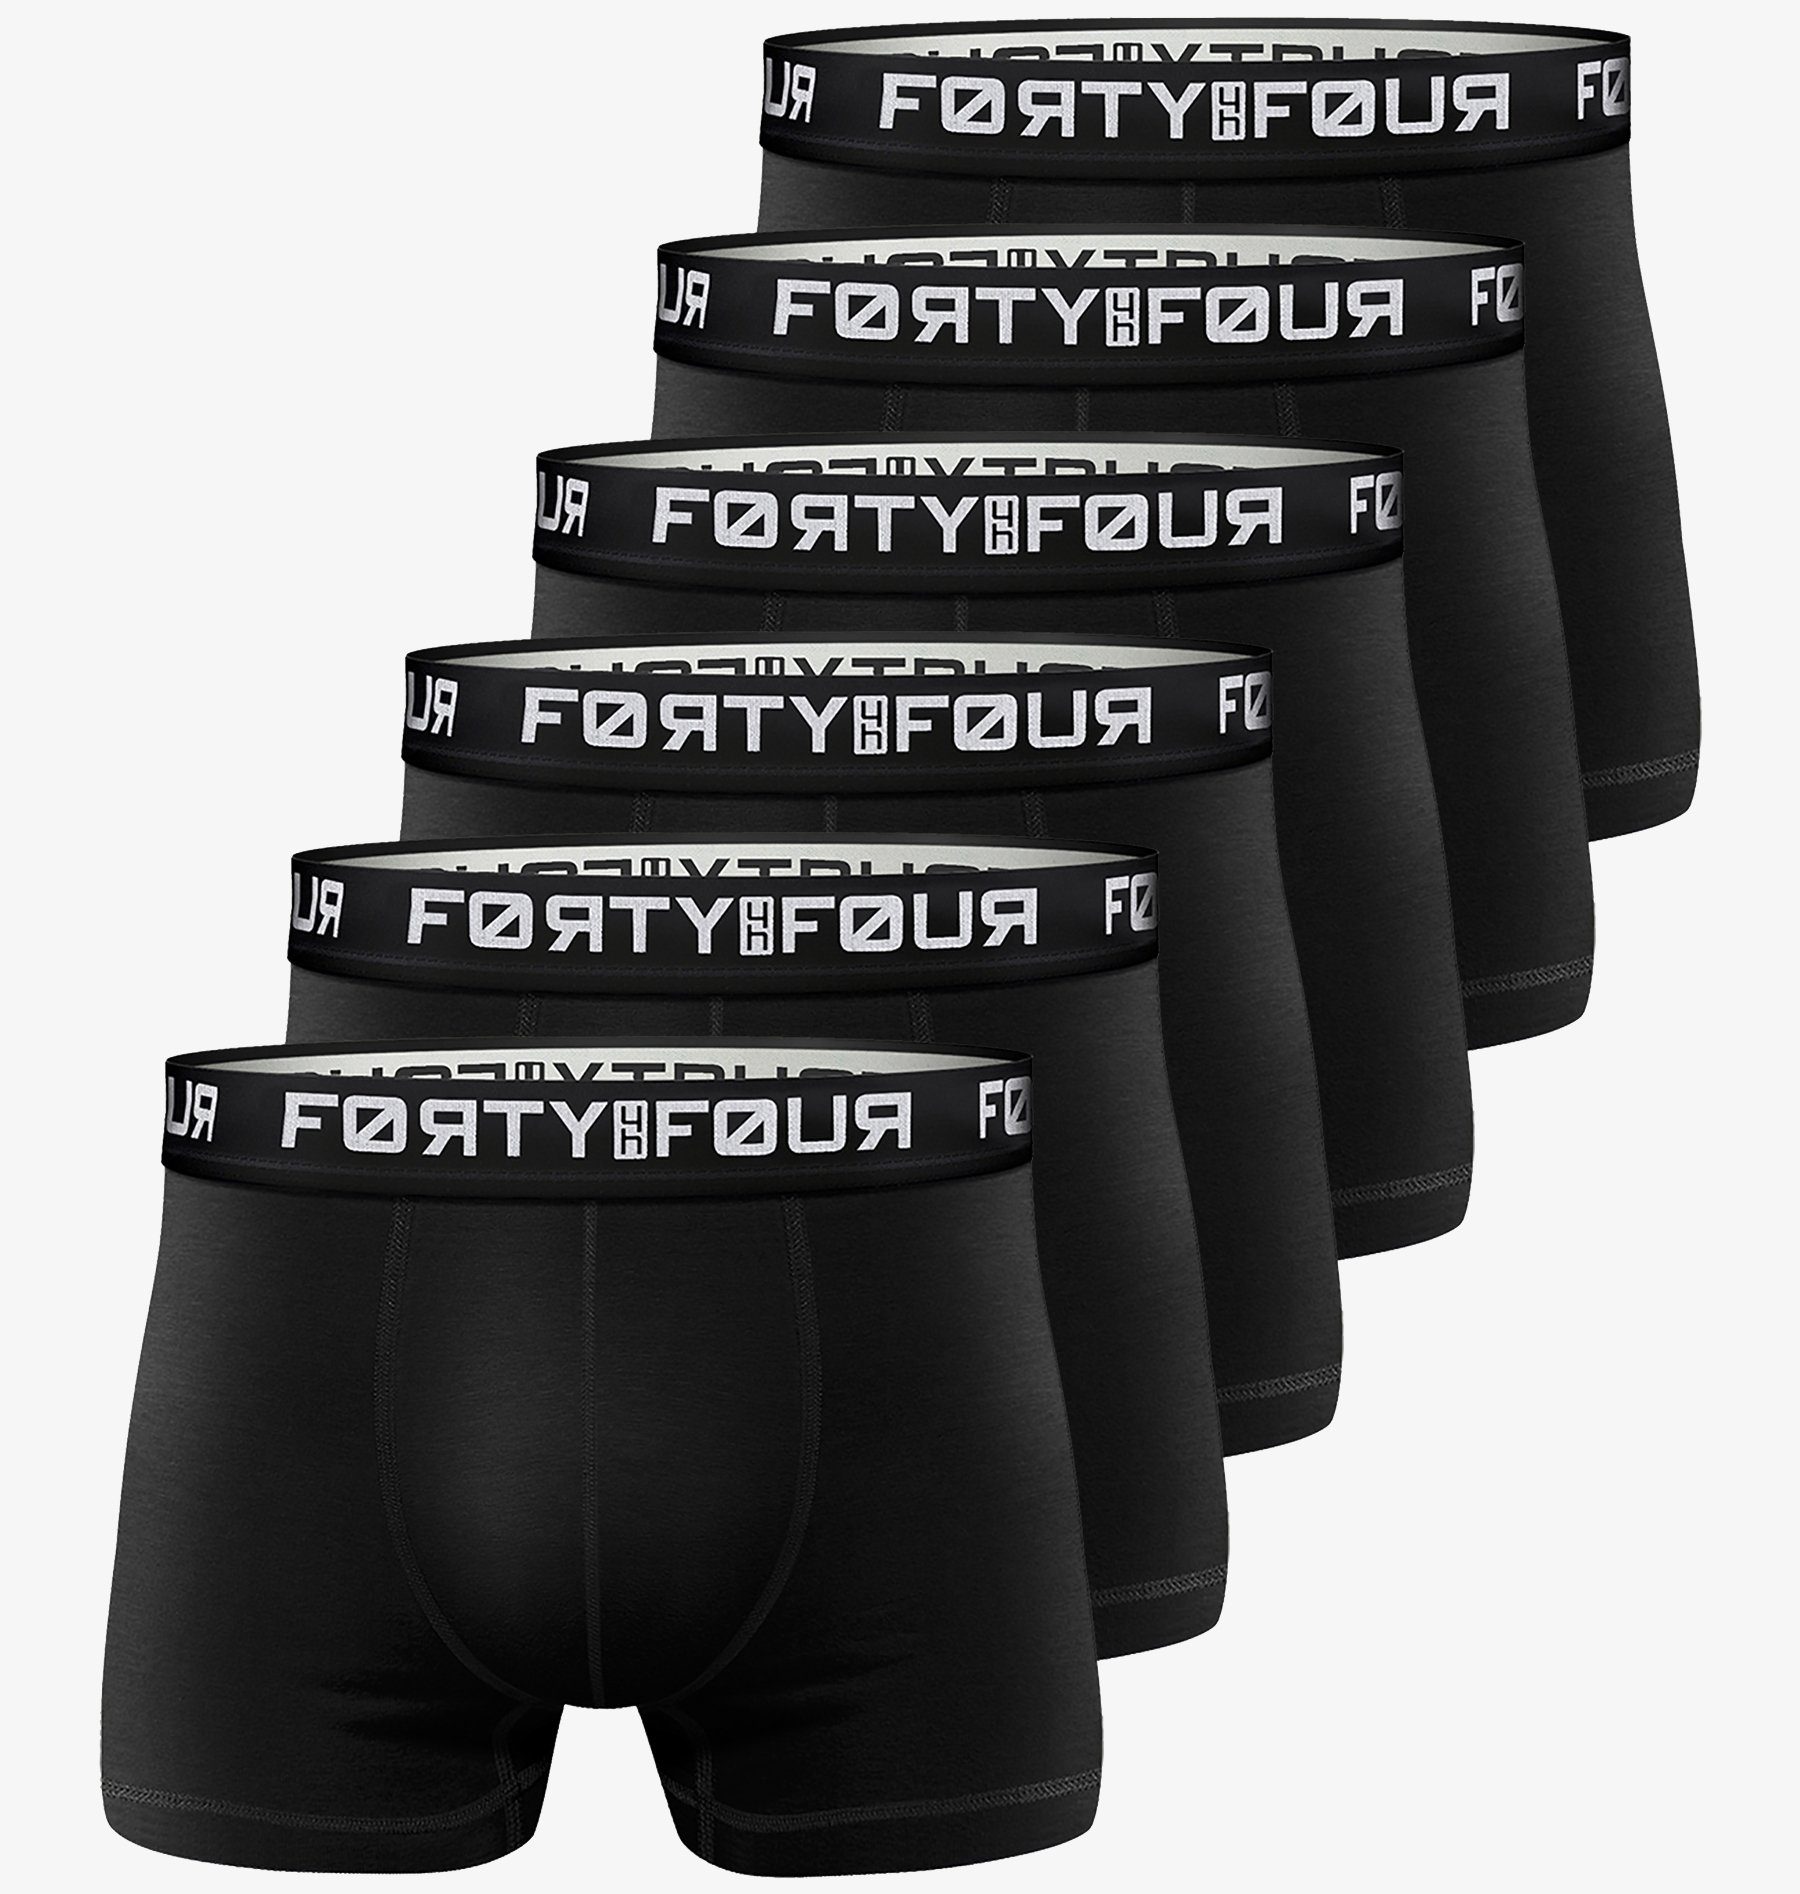 FortyFour Боксерські чоловічі труси, боксерки Herren Männer Підштанники Baumwolle Premium Qualität perfekte Passform (Vorteilspack, 6er Pack) S - 7XL